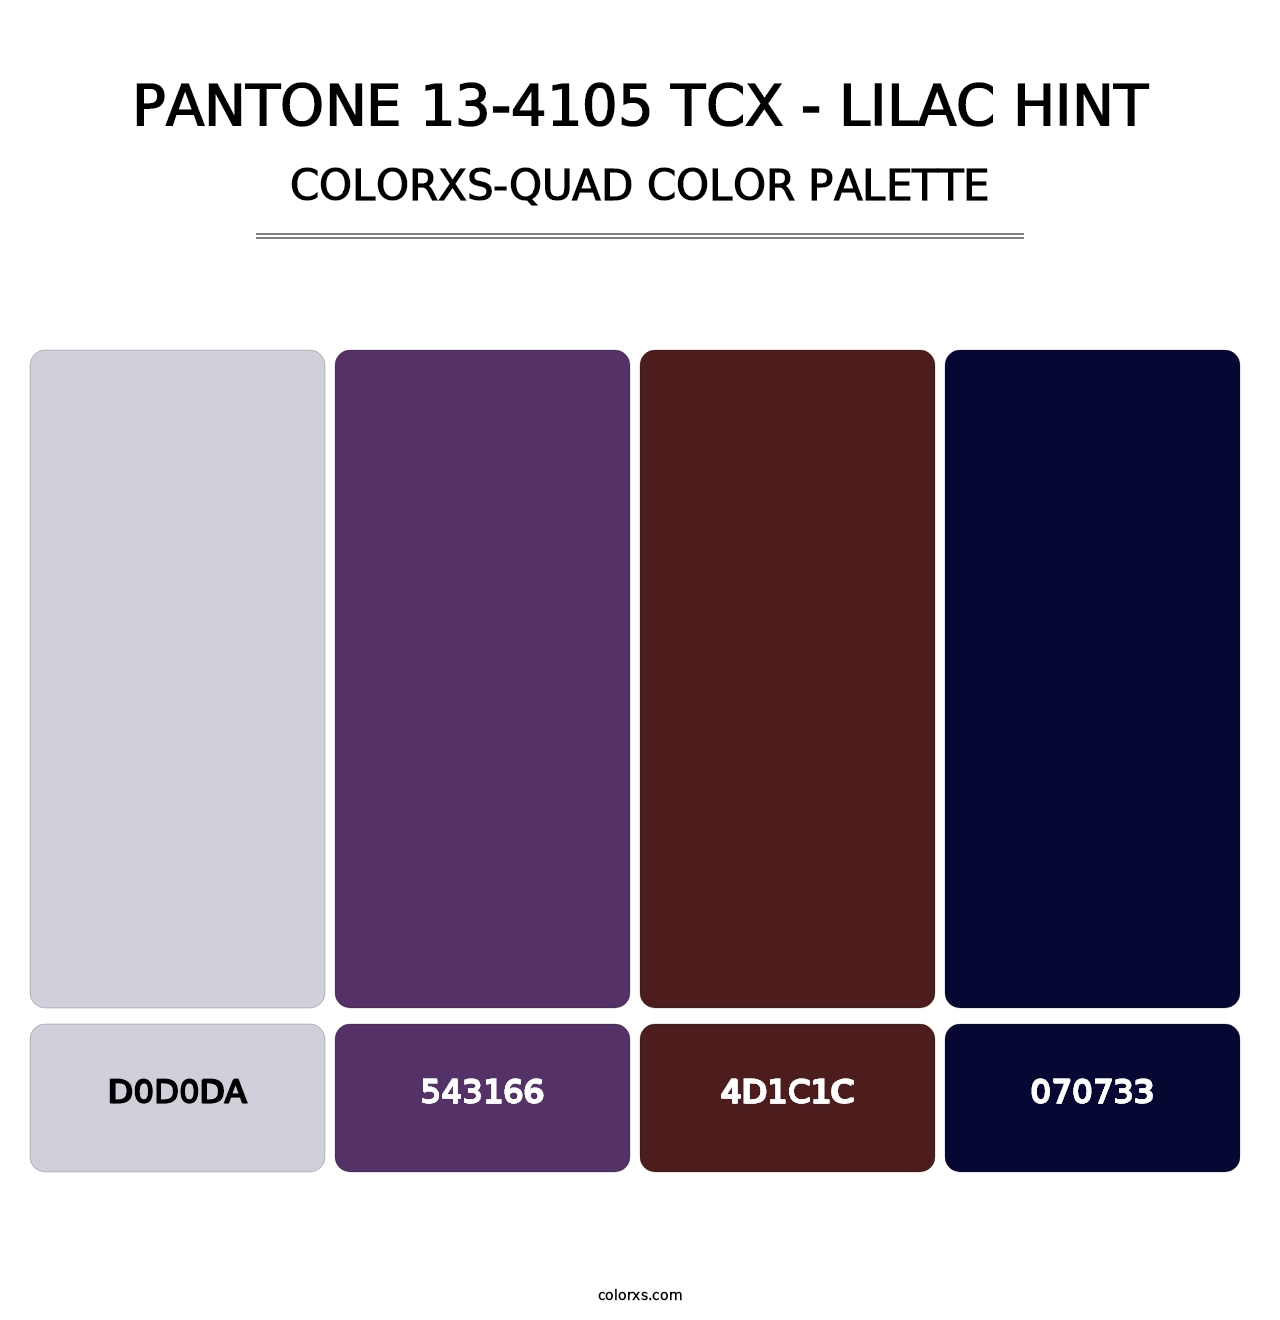 PANTONE 13-4105 TCX - Lilac Hint - Colorxs Quad Palette